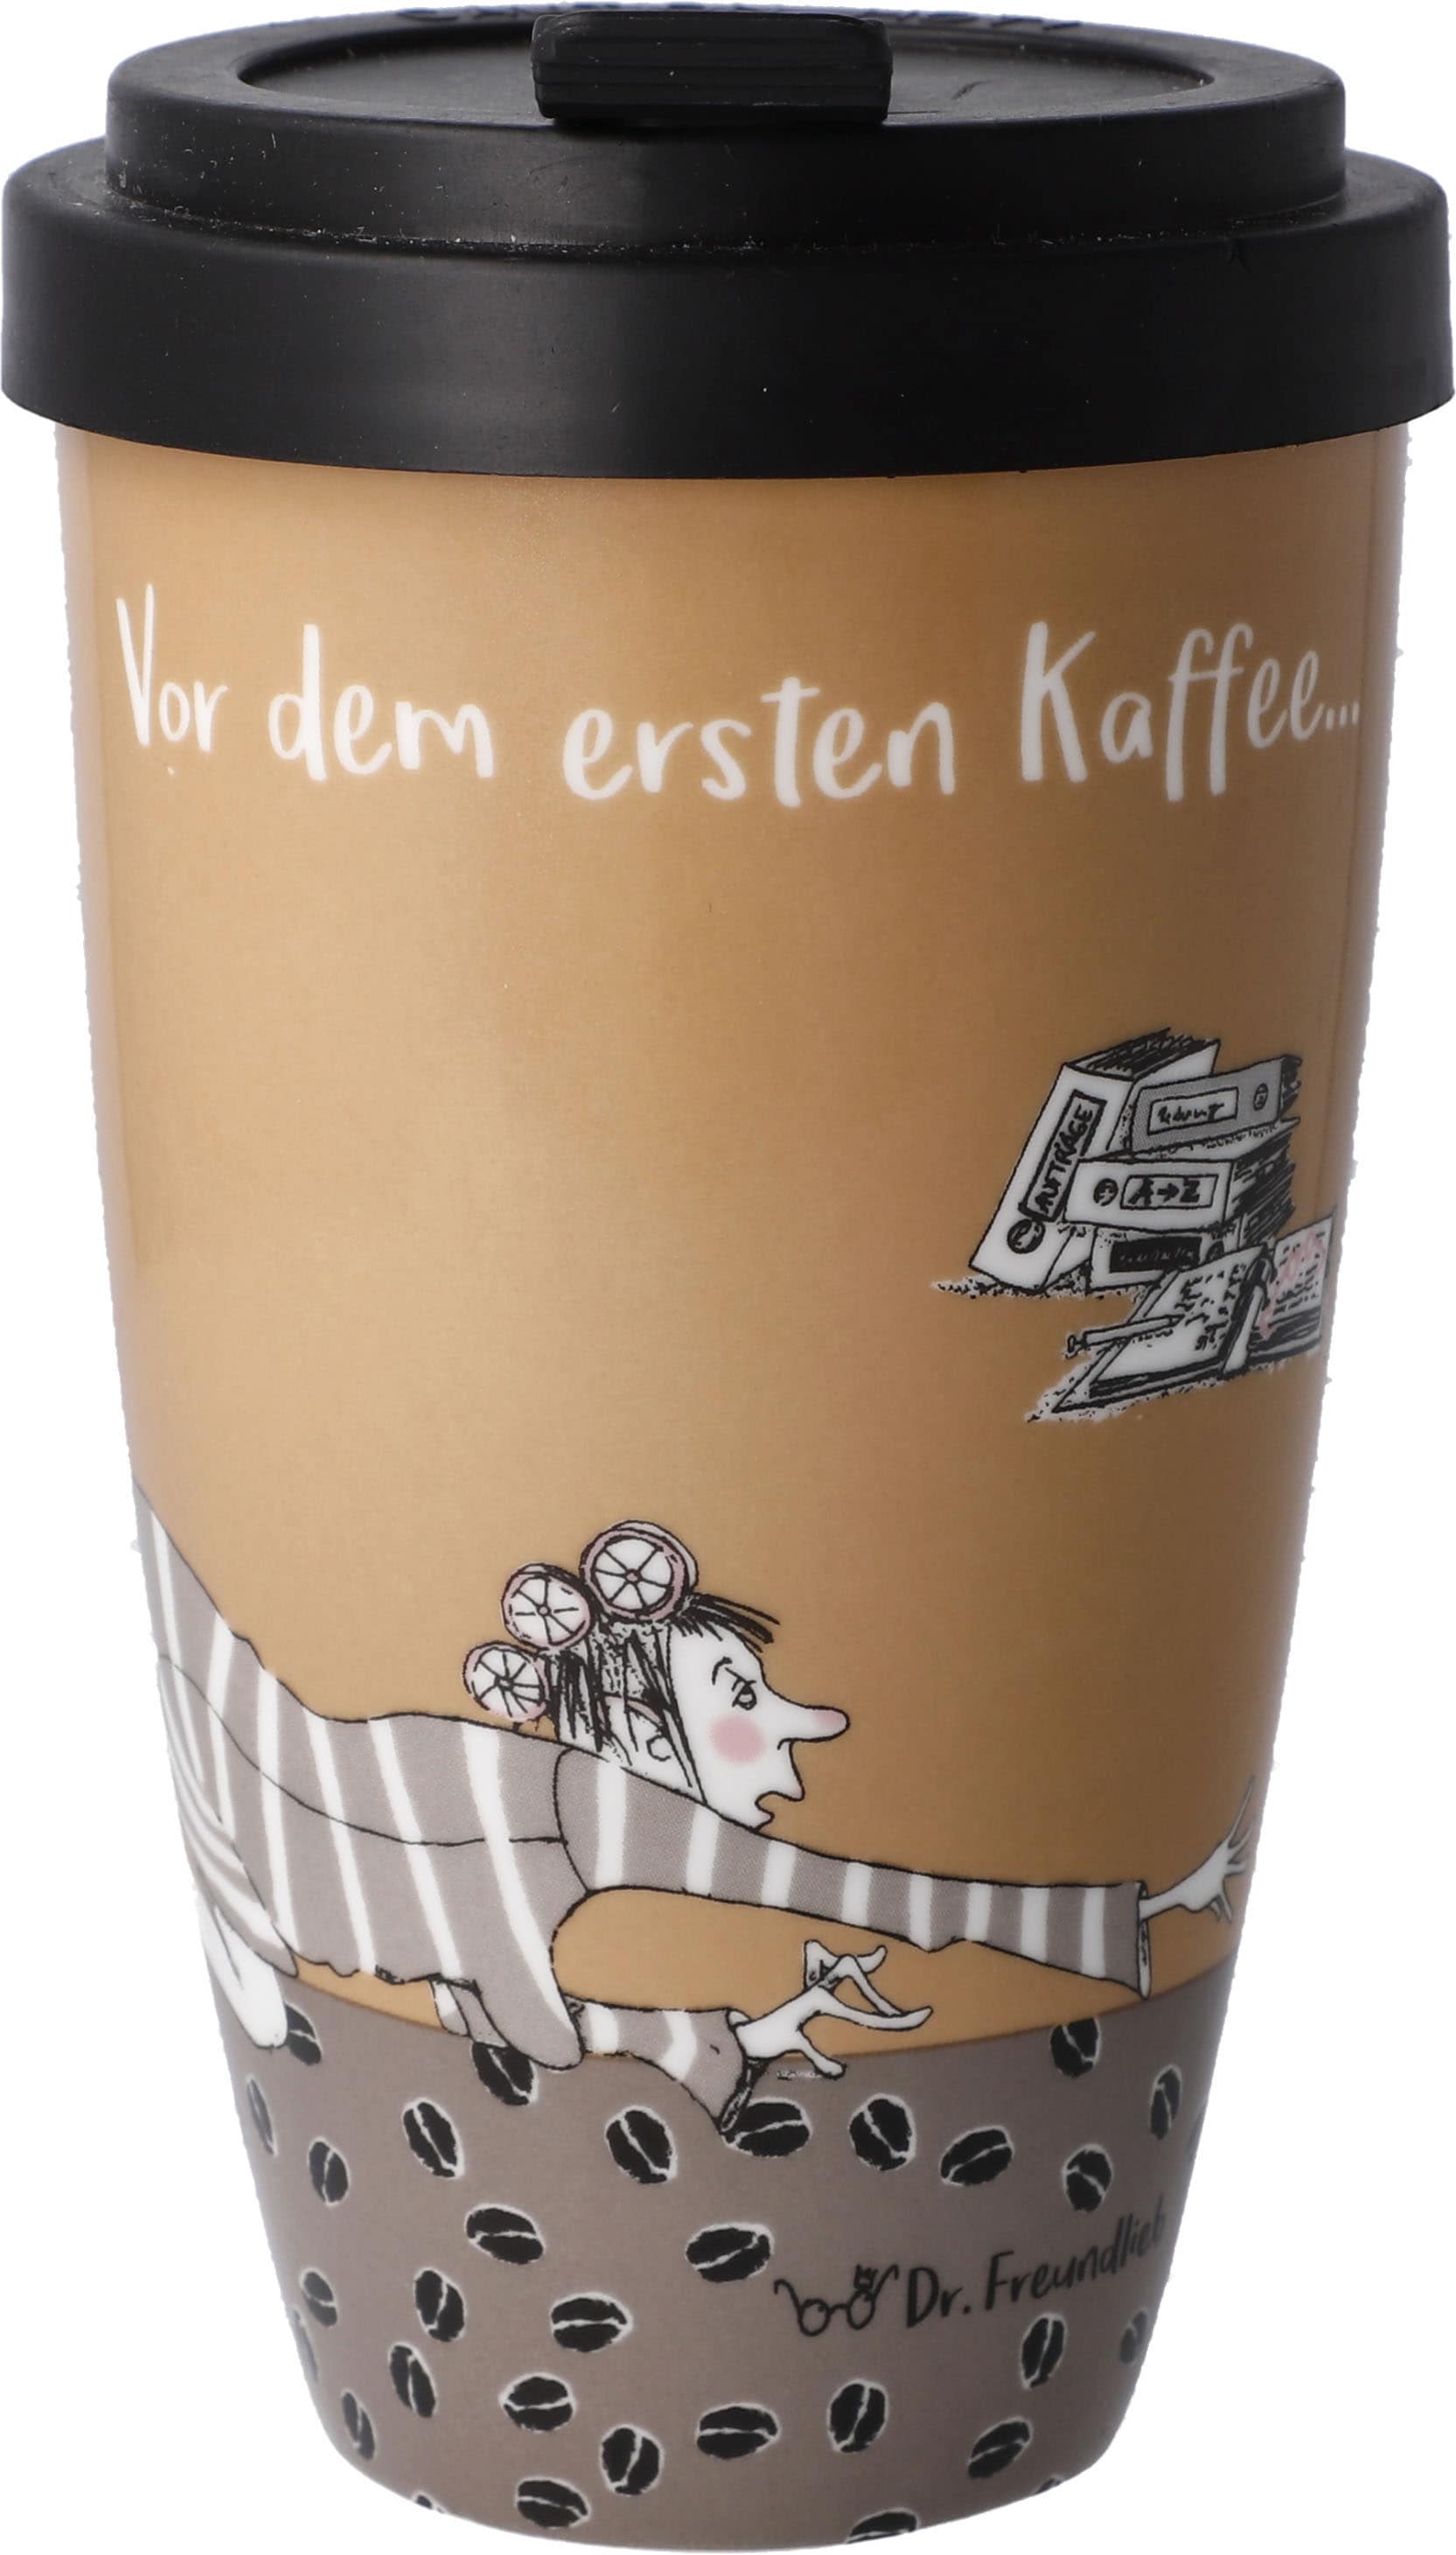 aus Goebel mit abnehmbarem »Barbara - dem Coffee-to-go-Becher BAUR Freundlieb bestellen Kaffee\